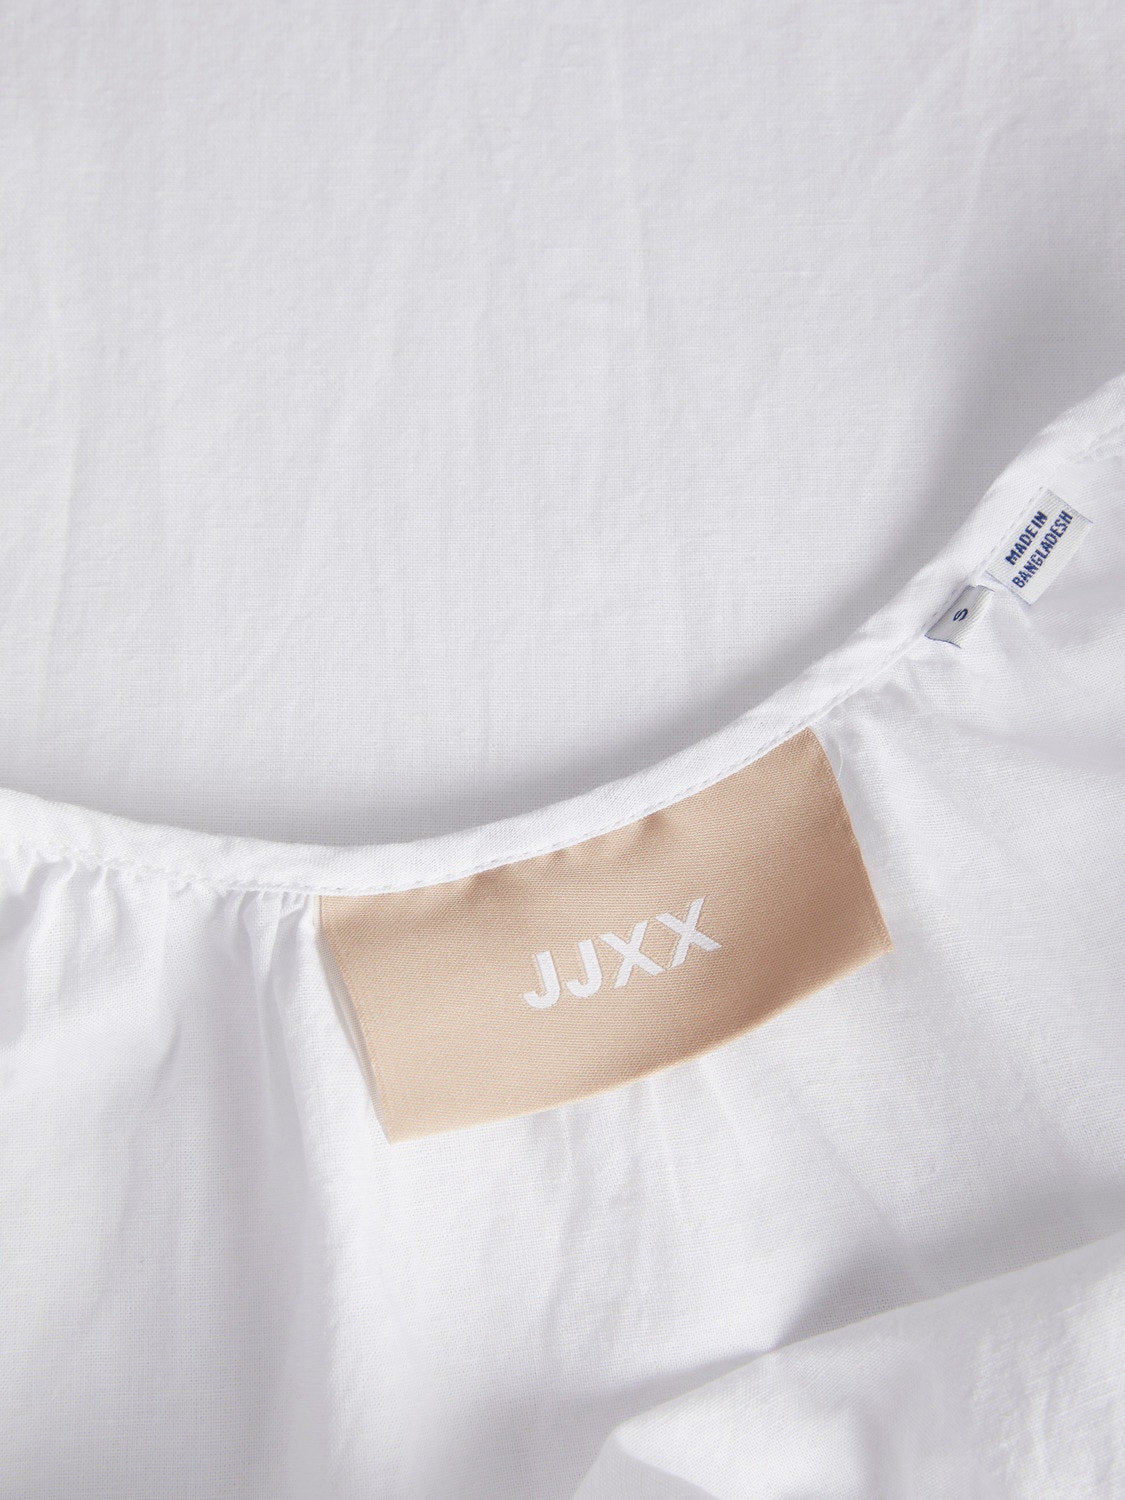 JJXX JXKARLA Casual Dress -White - 12249766